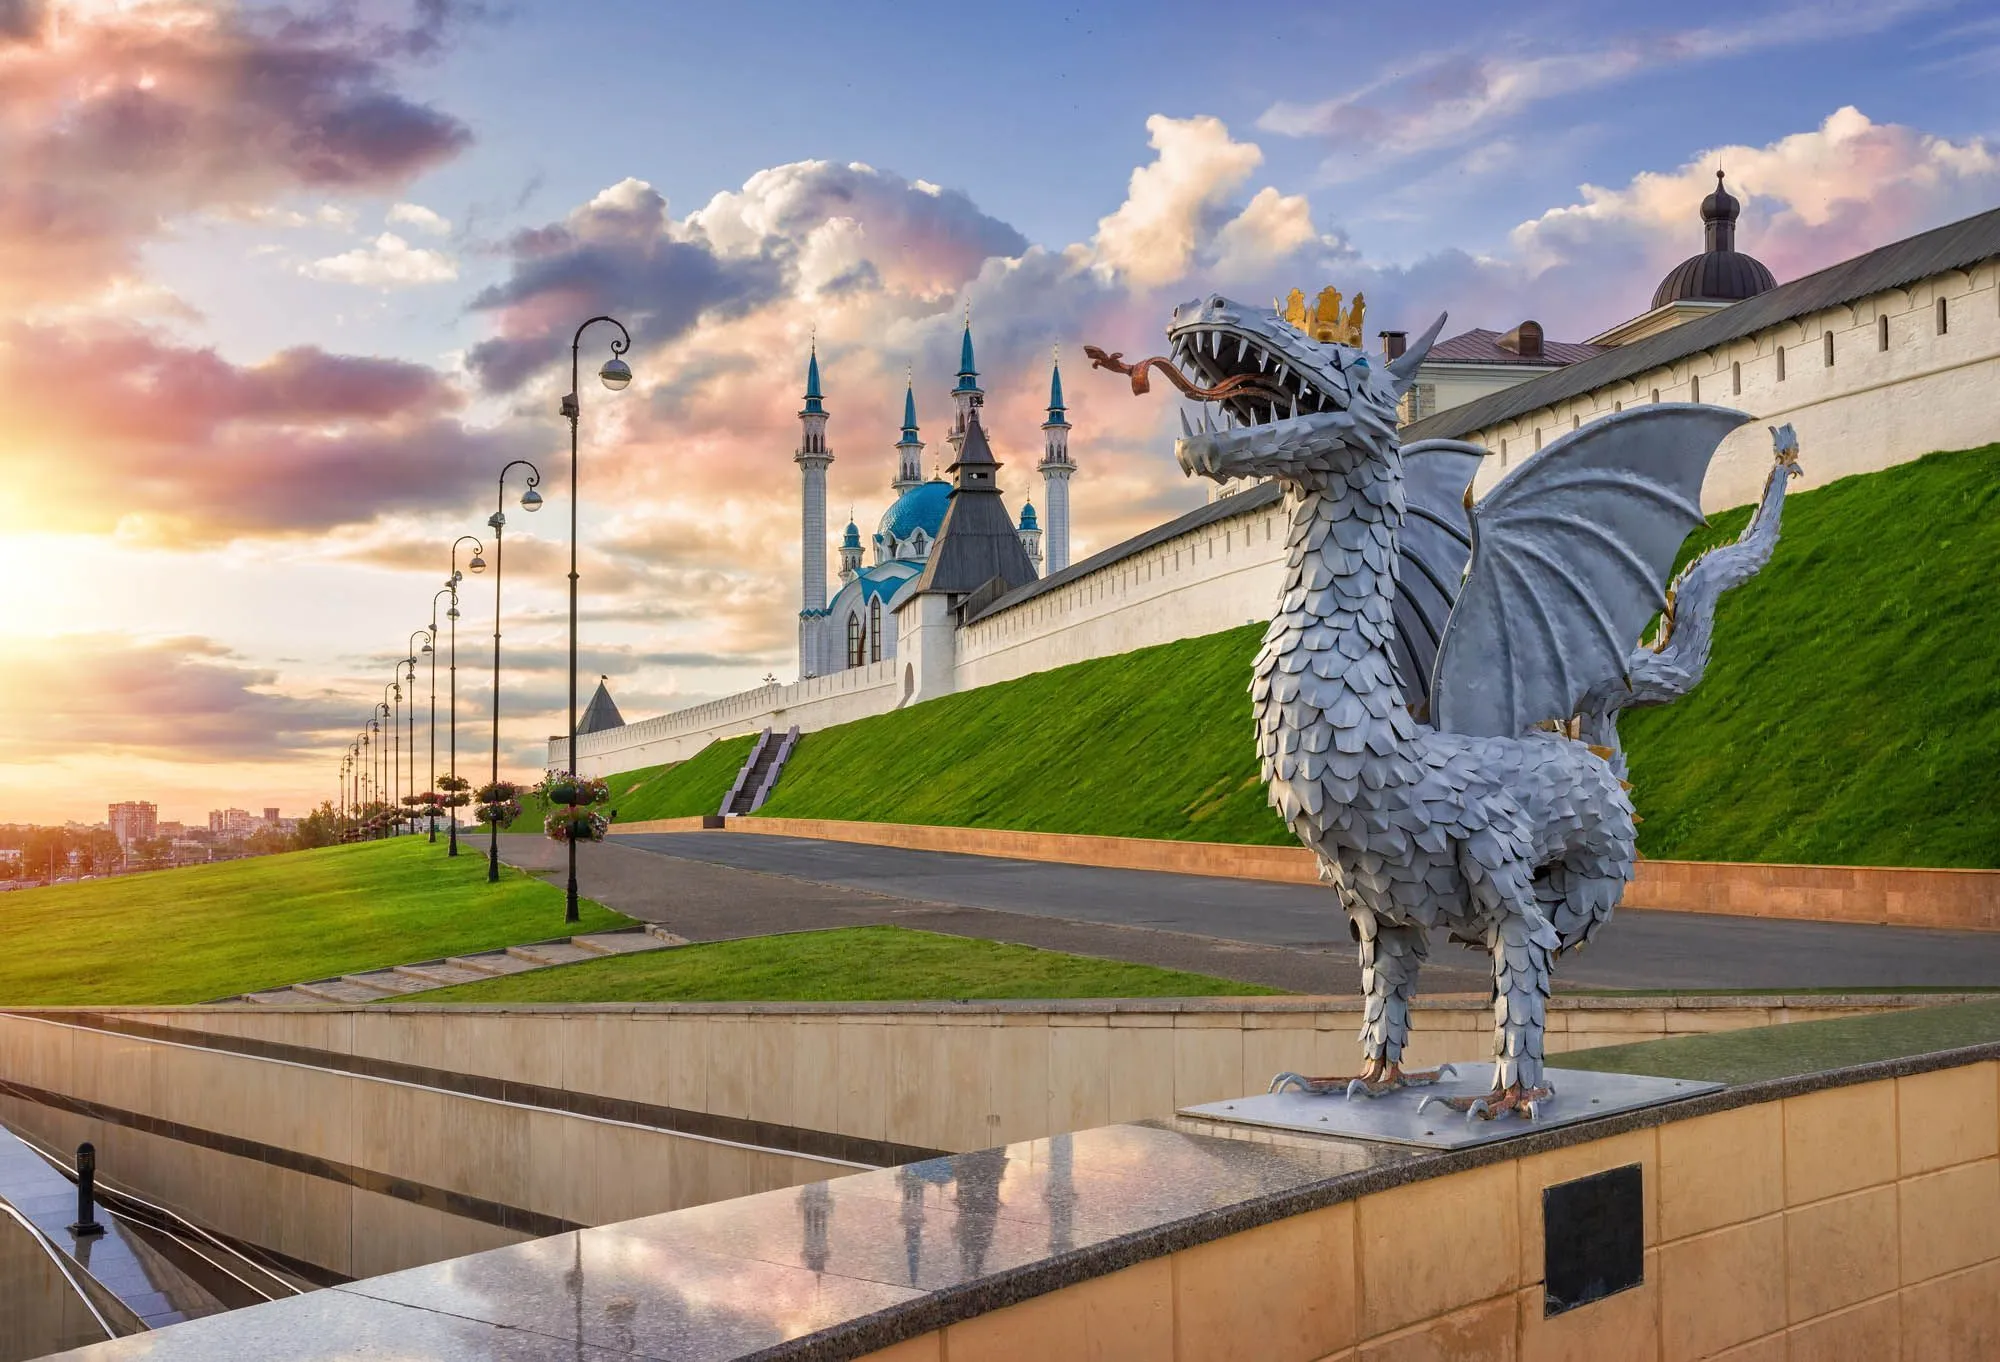 Sightseeing tour of Kazan with a visit to the Kazan Kremlin